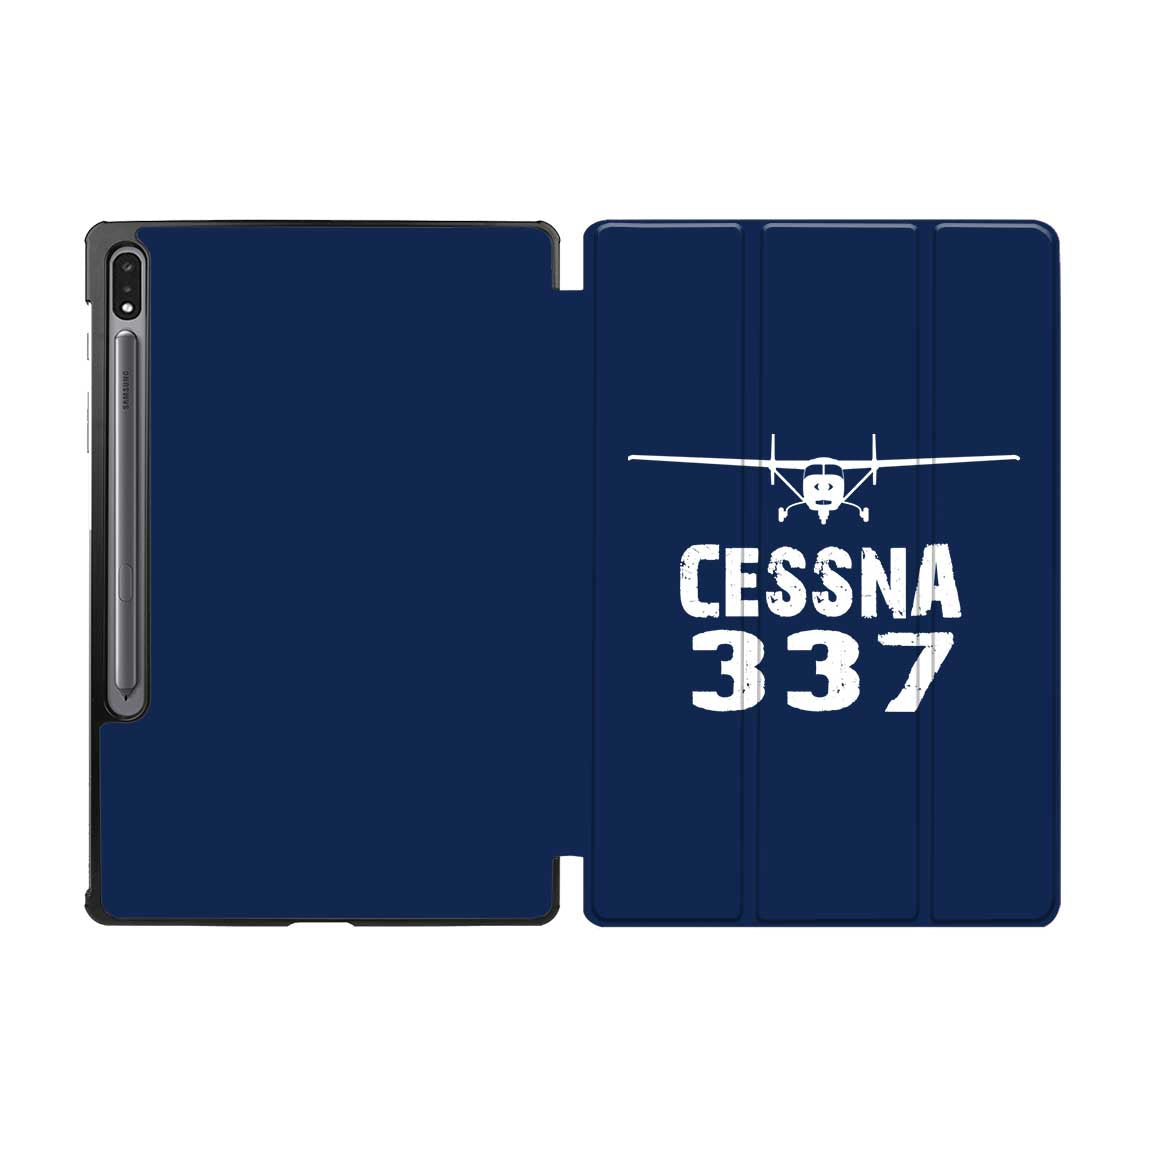 Cessna 337 & Plane Designed Samsung Tablet Cases